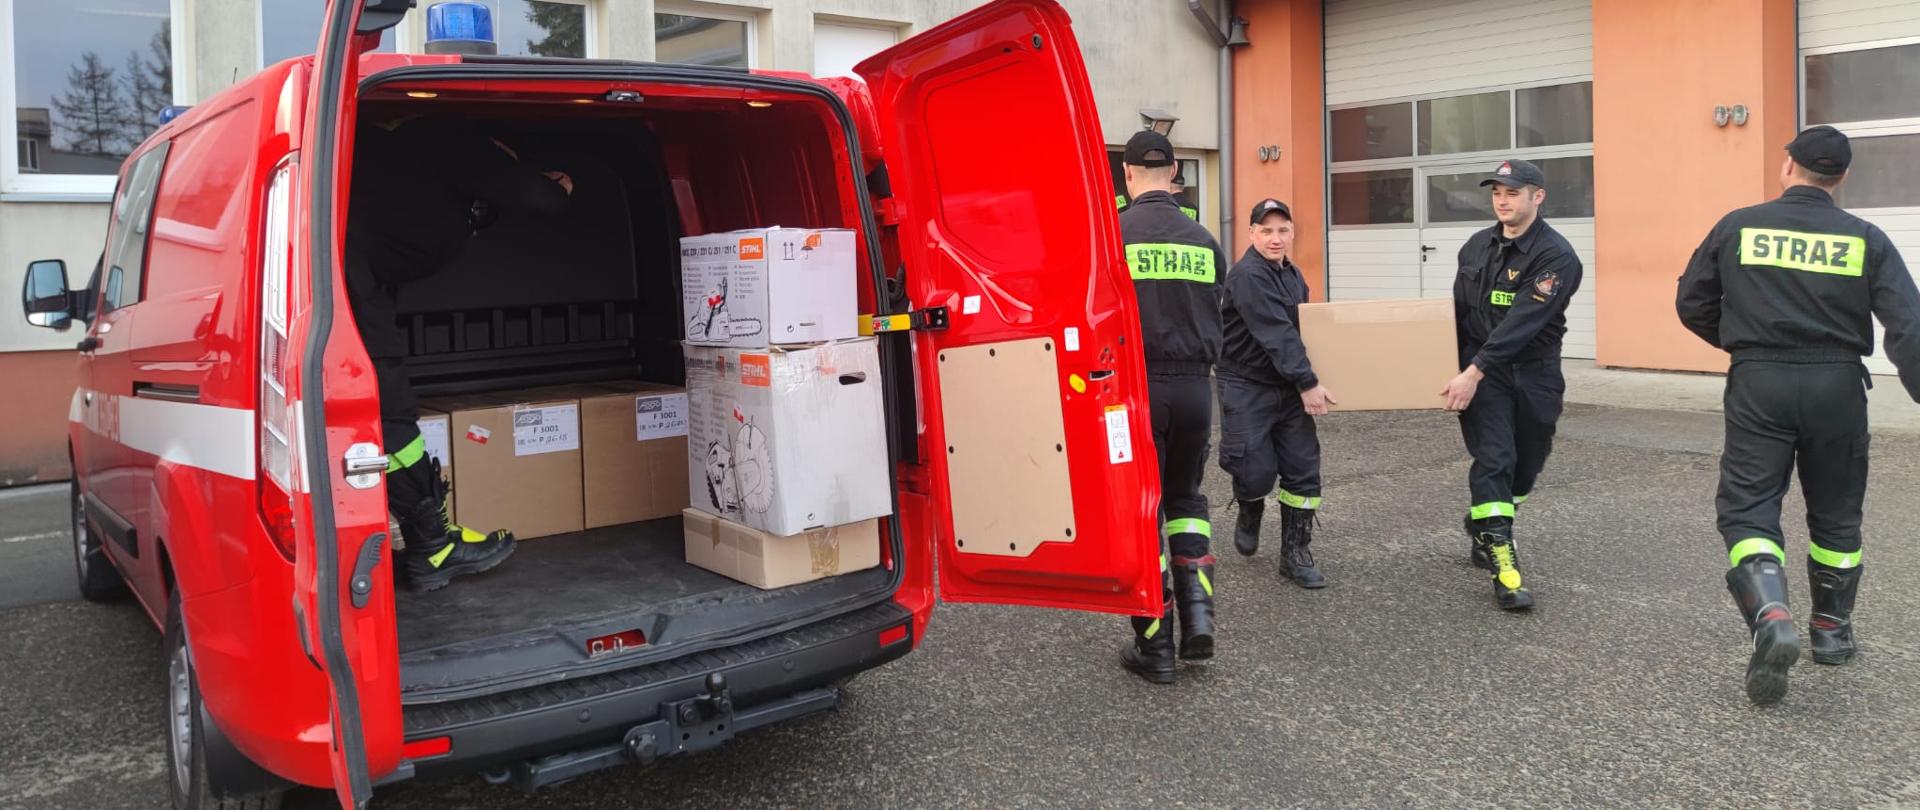 Na zdjęciu widzimy 4 strażaków podczas pakowania sprzętu do samochodu pożarniczego. Strażacy niosą kartonowe pudełko w kierunku pojazdu pożarniczego. Załadunek odbywa się na placu wewnętrznym Komendy Miejskiej Państwowej Straży Pożarnej w Tarnowie.